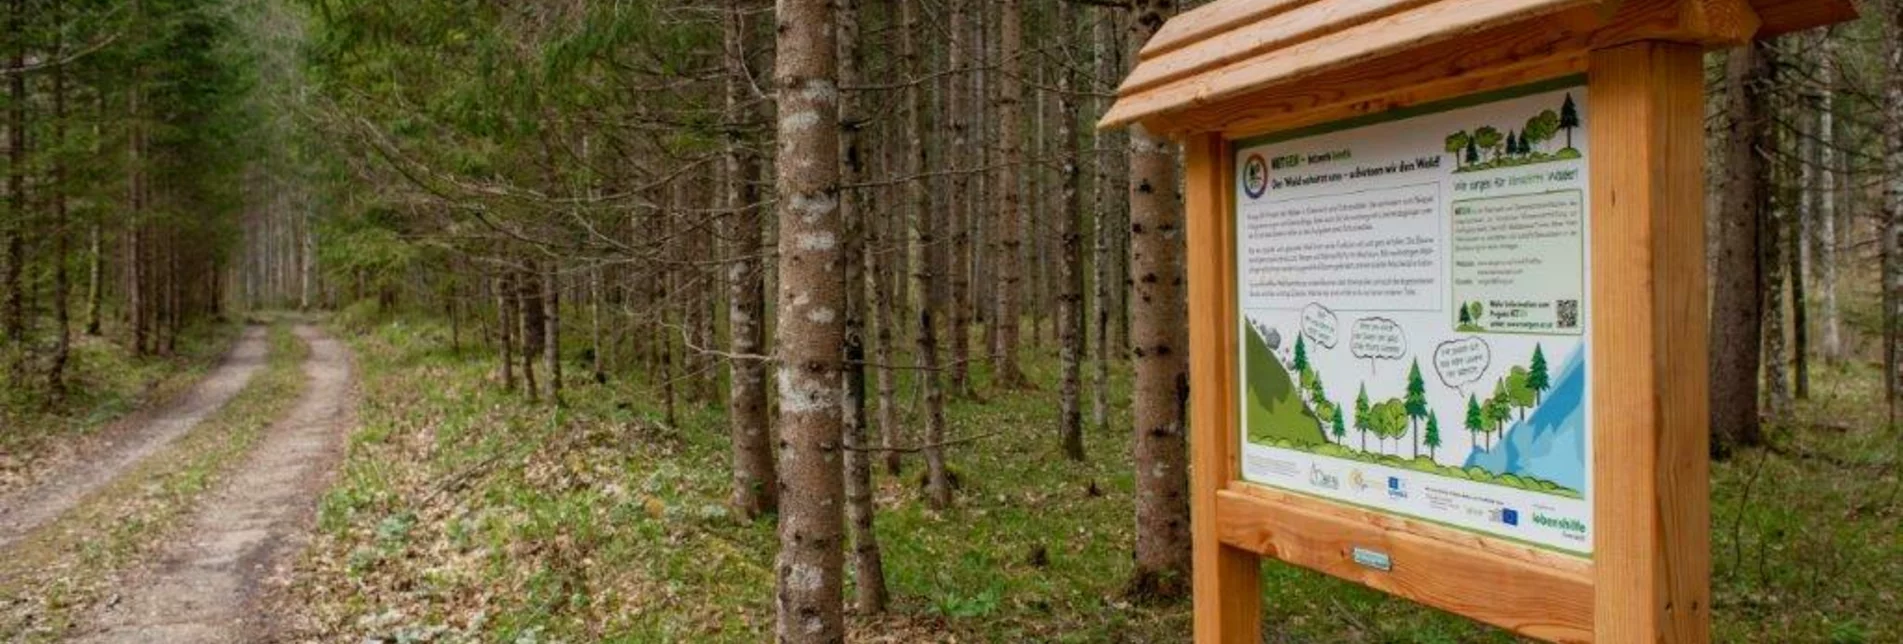 Themenweg Klimafitter Wald - Gams - Touren-Impression #1 | © TV Gesäuse